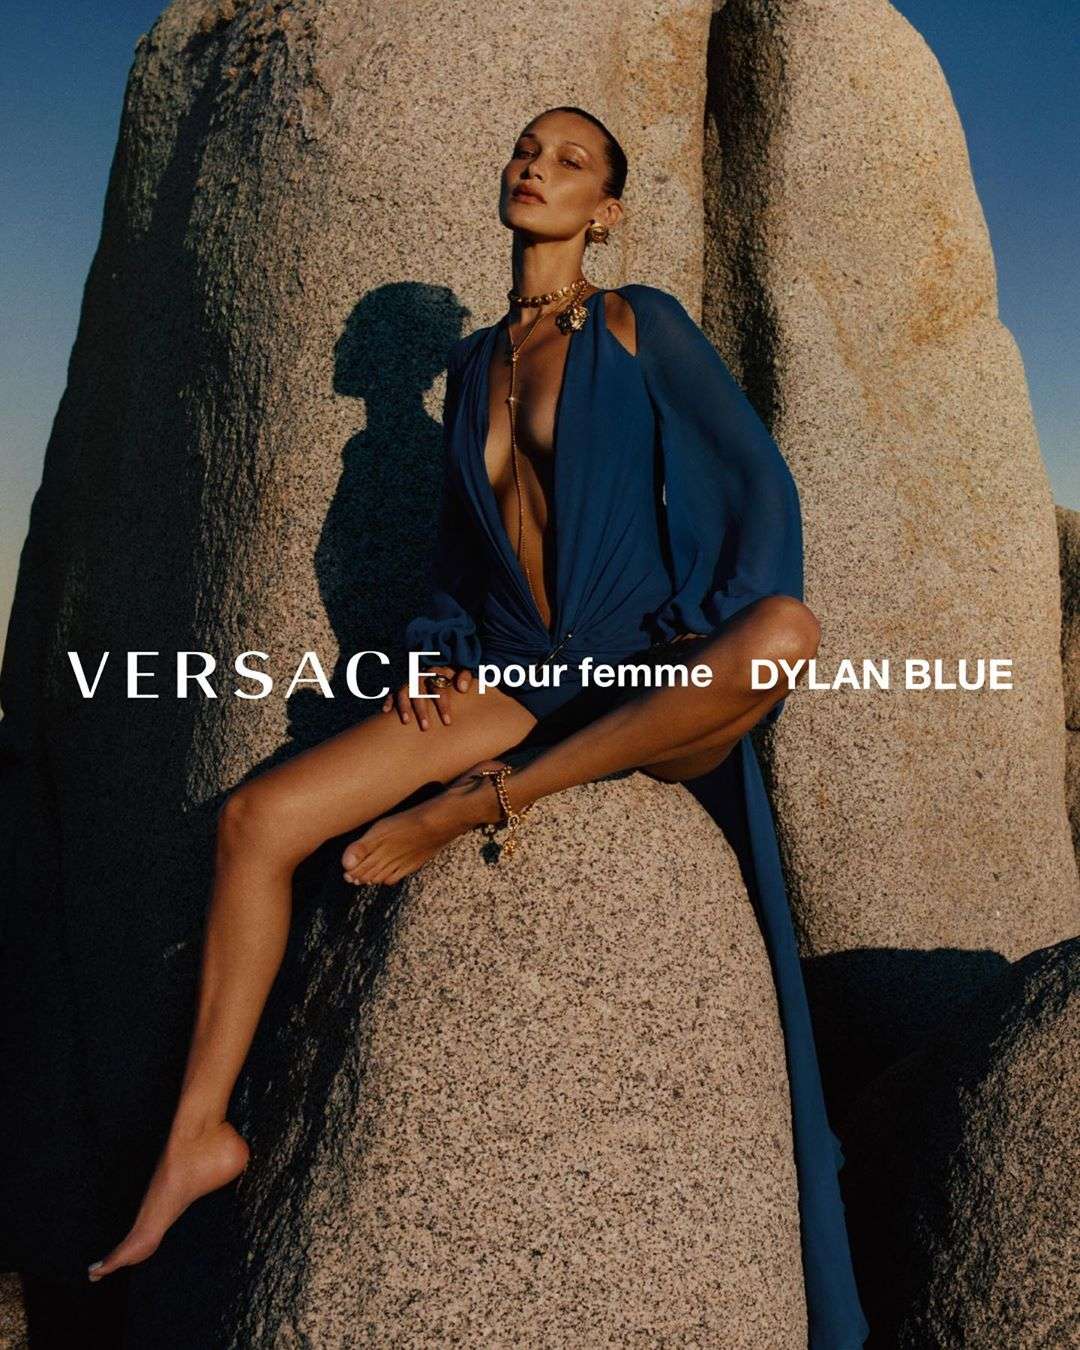 Італійська чуттєвість: Белла Хадід і Гейлі Бібер знялись у сексуальній рекламі Versace - фото 491419